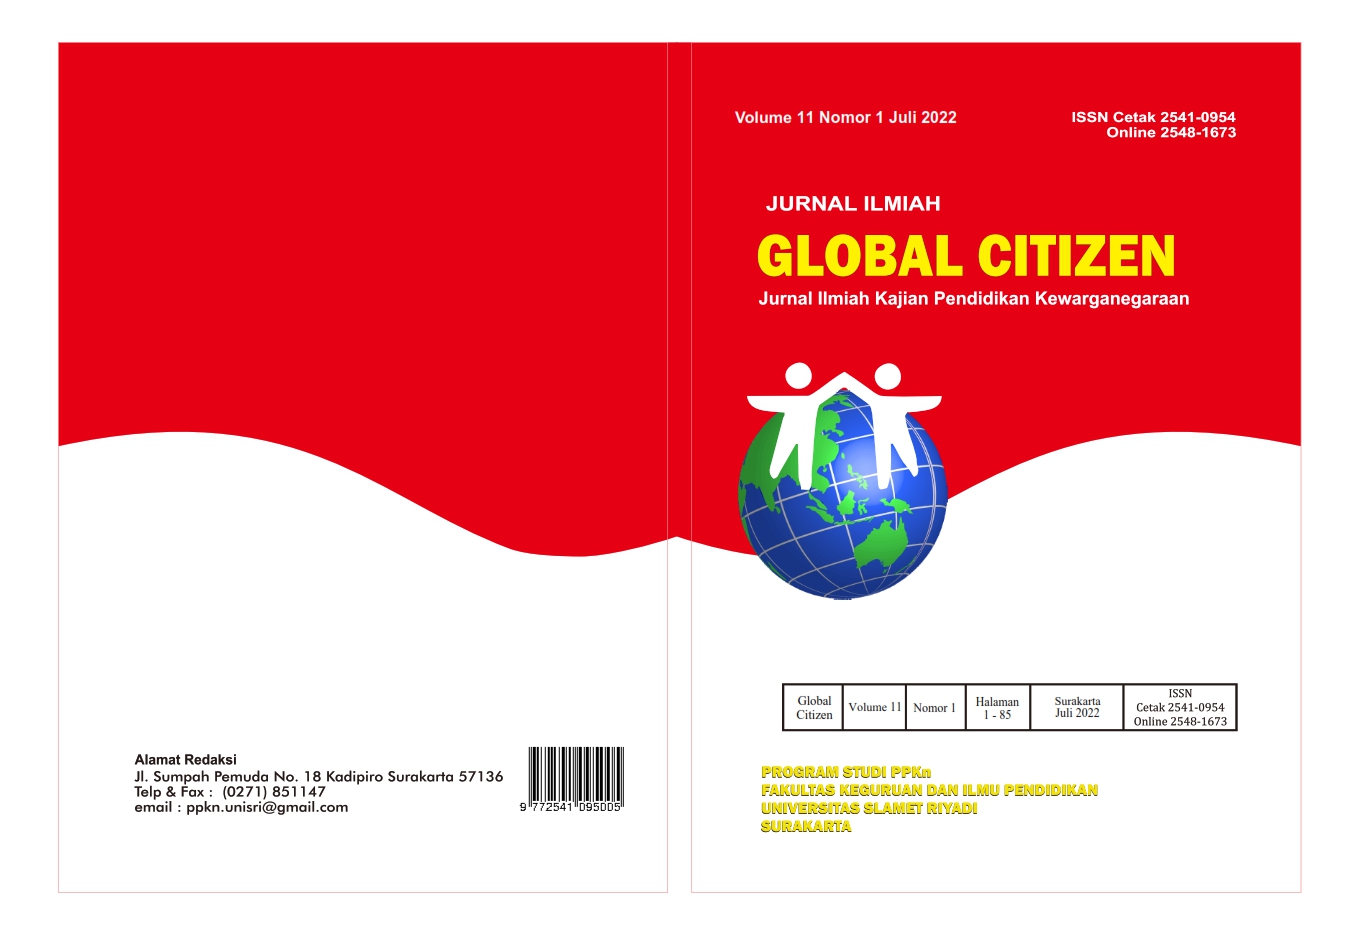 					View Vol. 11 No. 1 (2022): JURNAL ILMIAH GLOBAL CITIZEN 
				